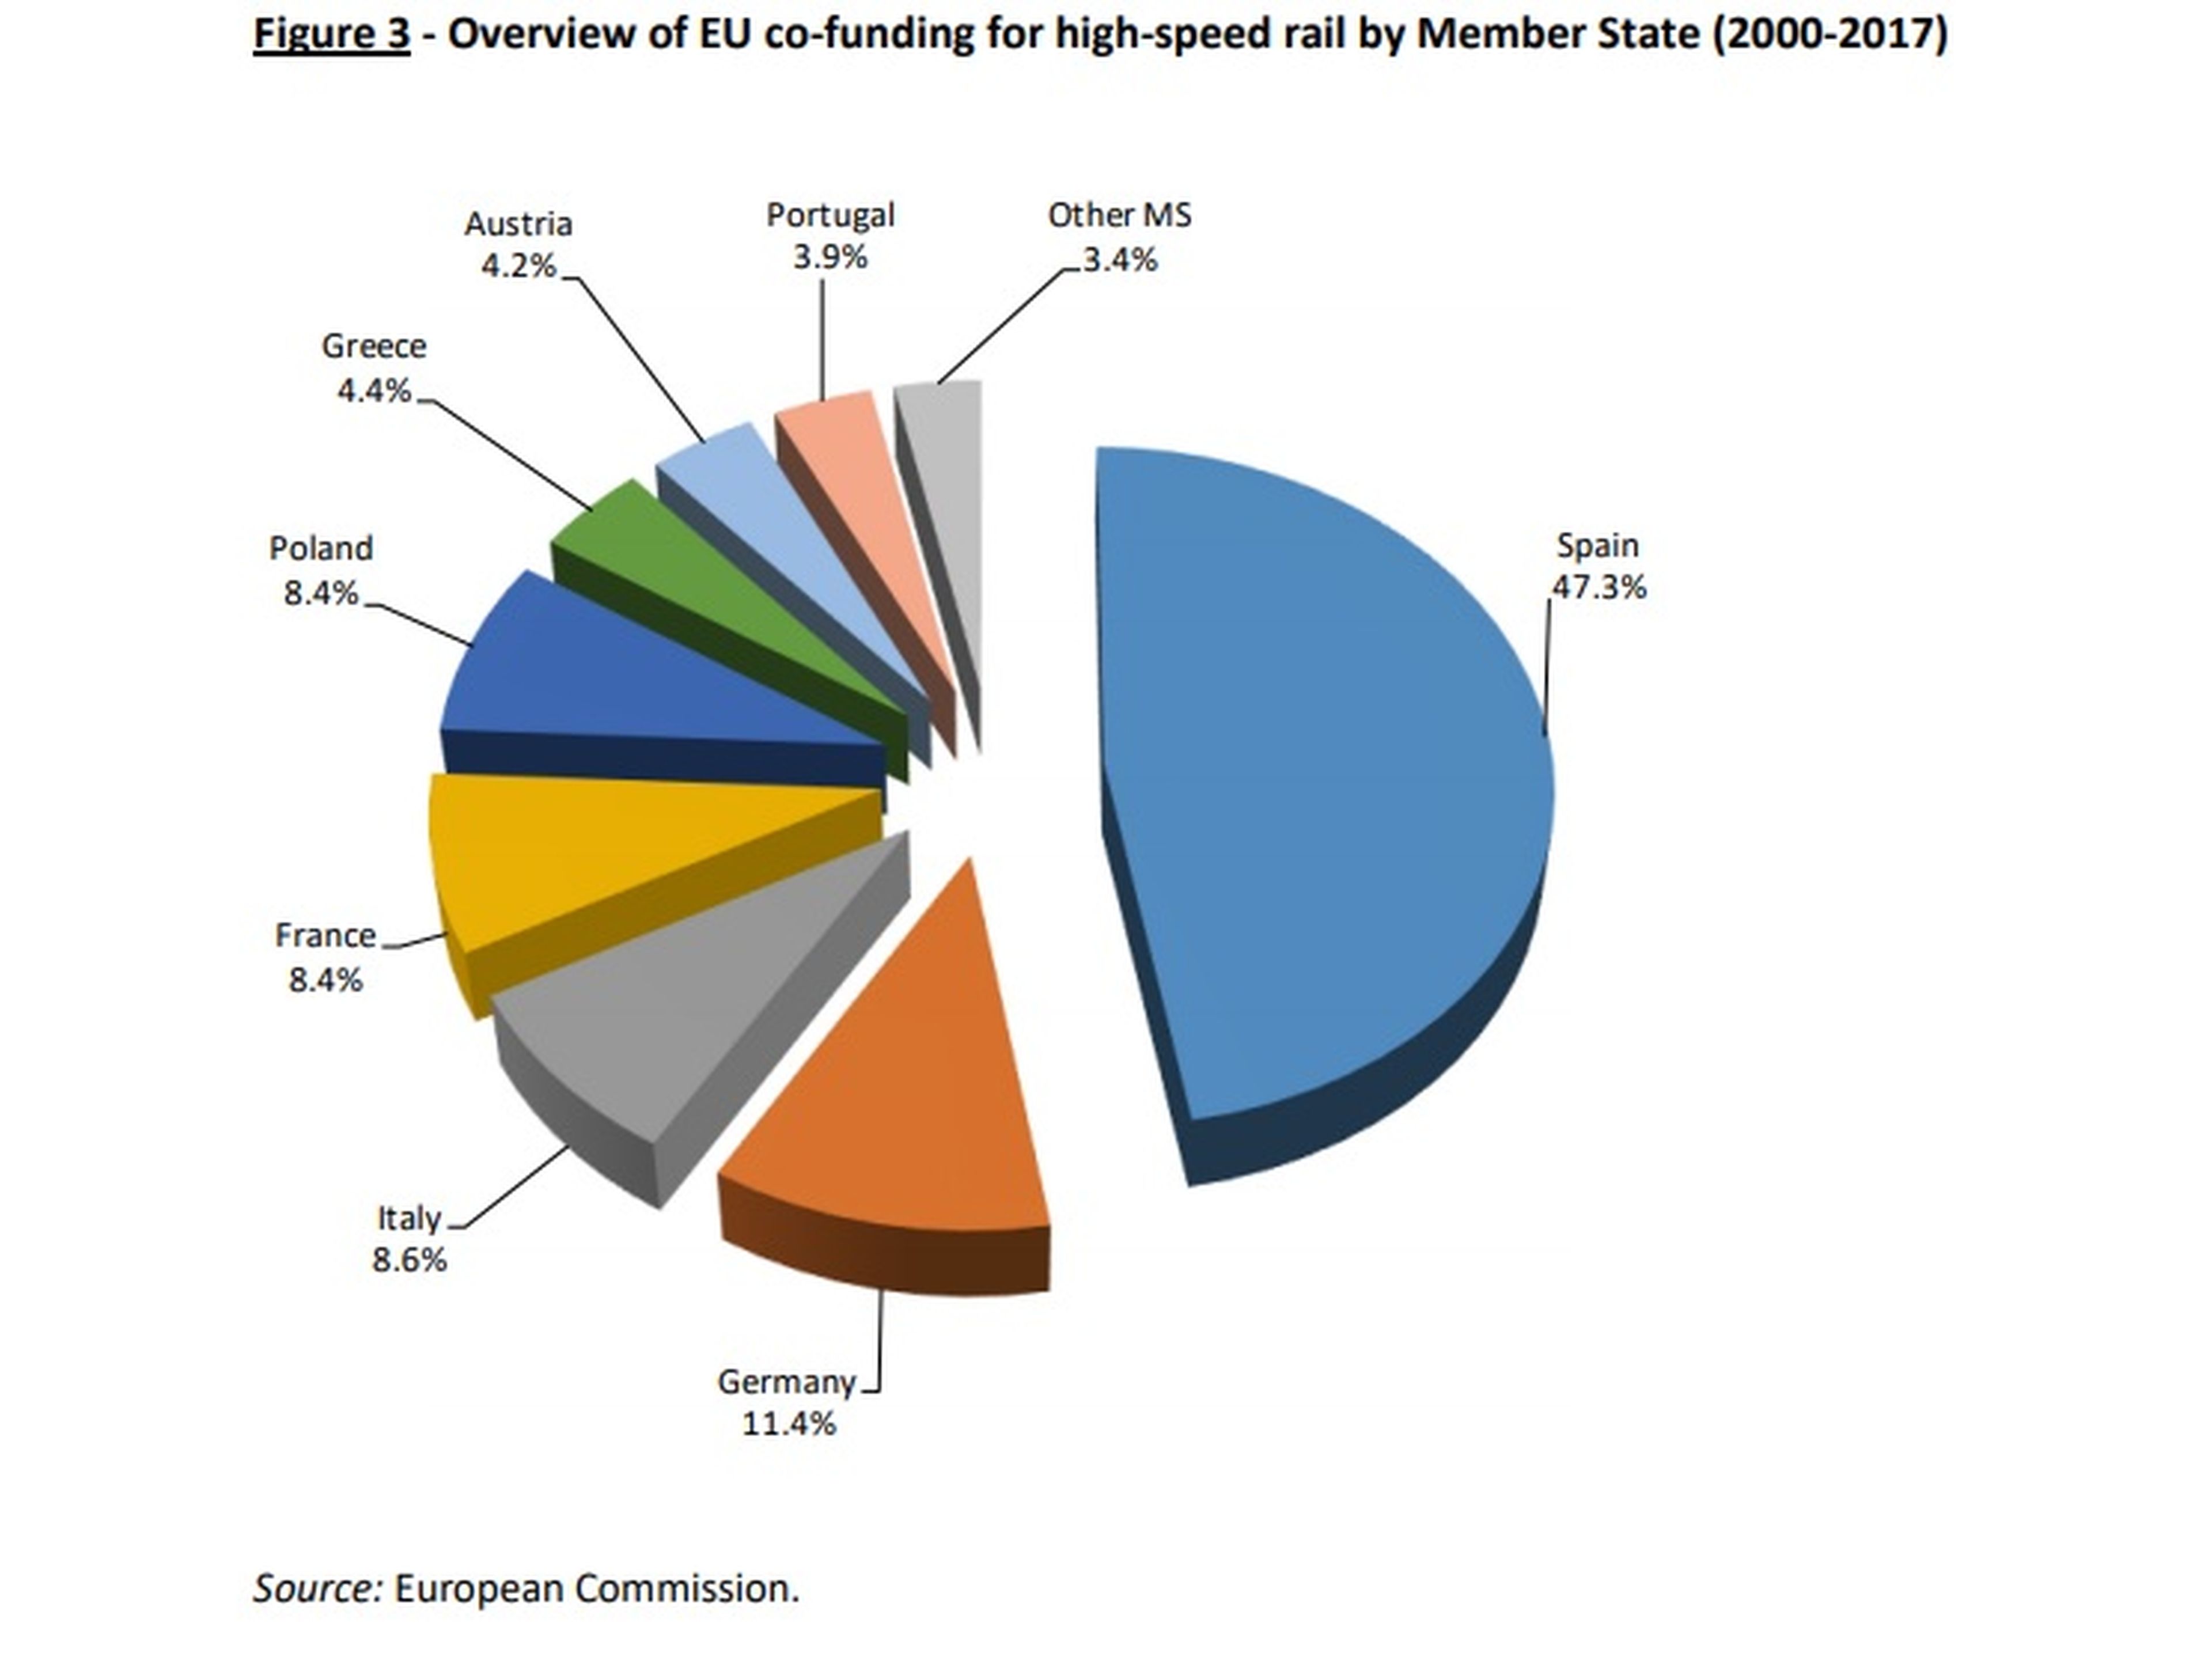 Distribución de los fondos comunitarios para la red ferroviaria de alta velocidad